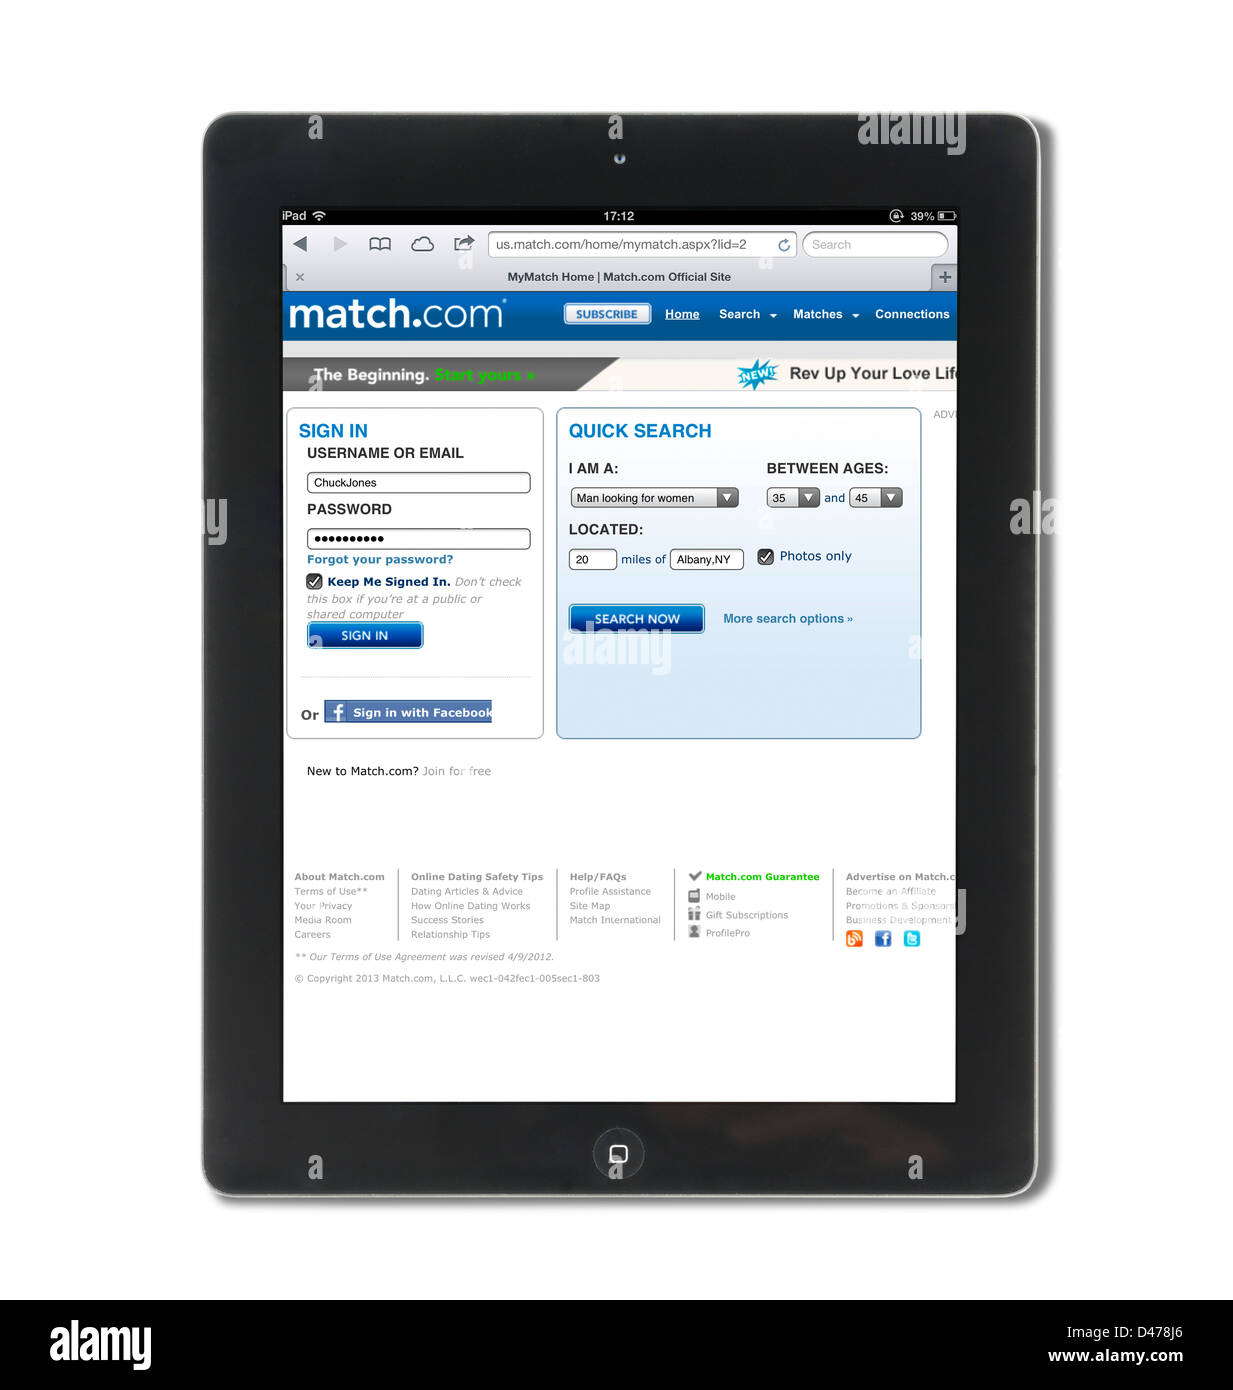 Die online-dating Website match.com angesehen in den USA auf eine 4. Generation Apple iPad, USA Stockfoto